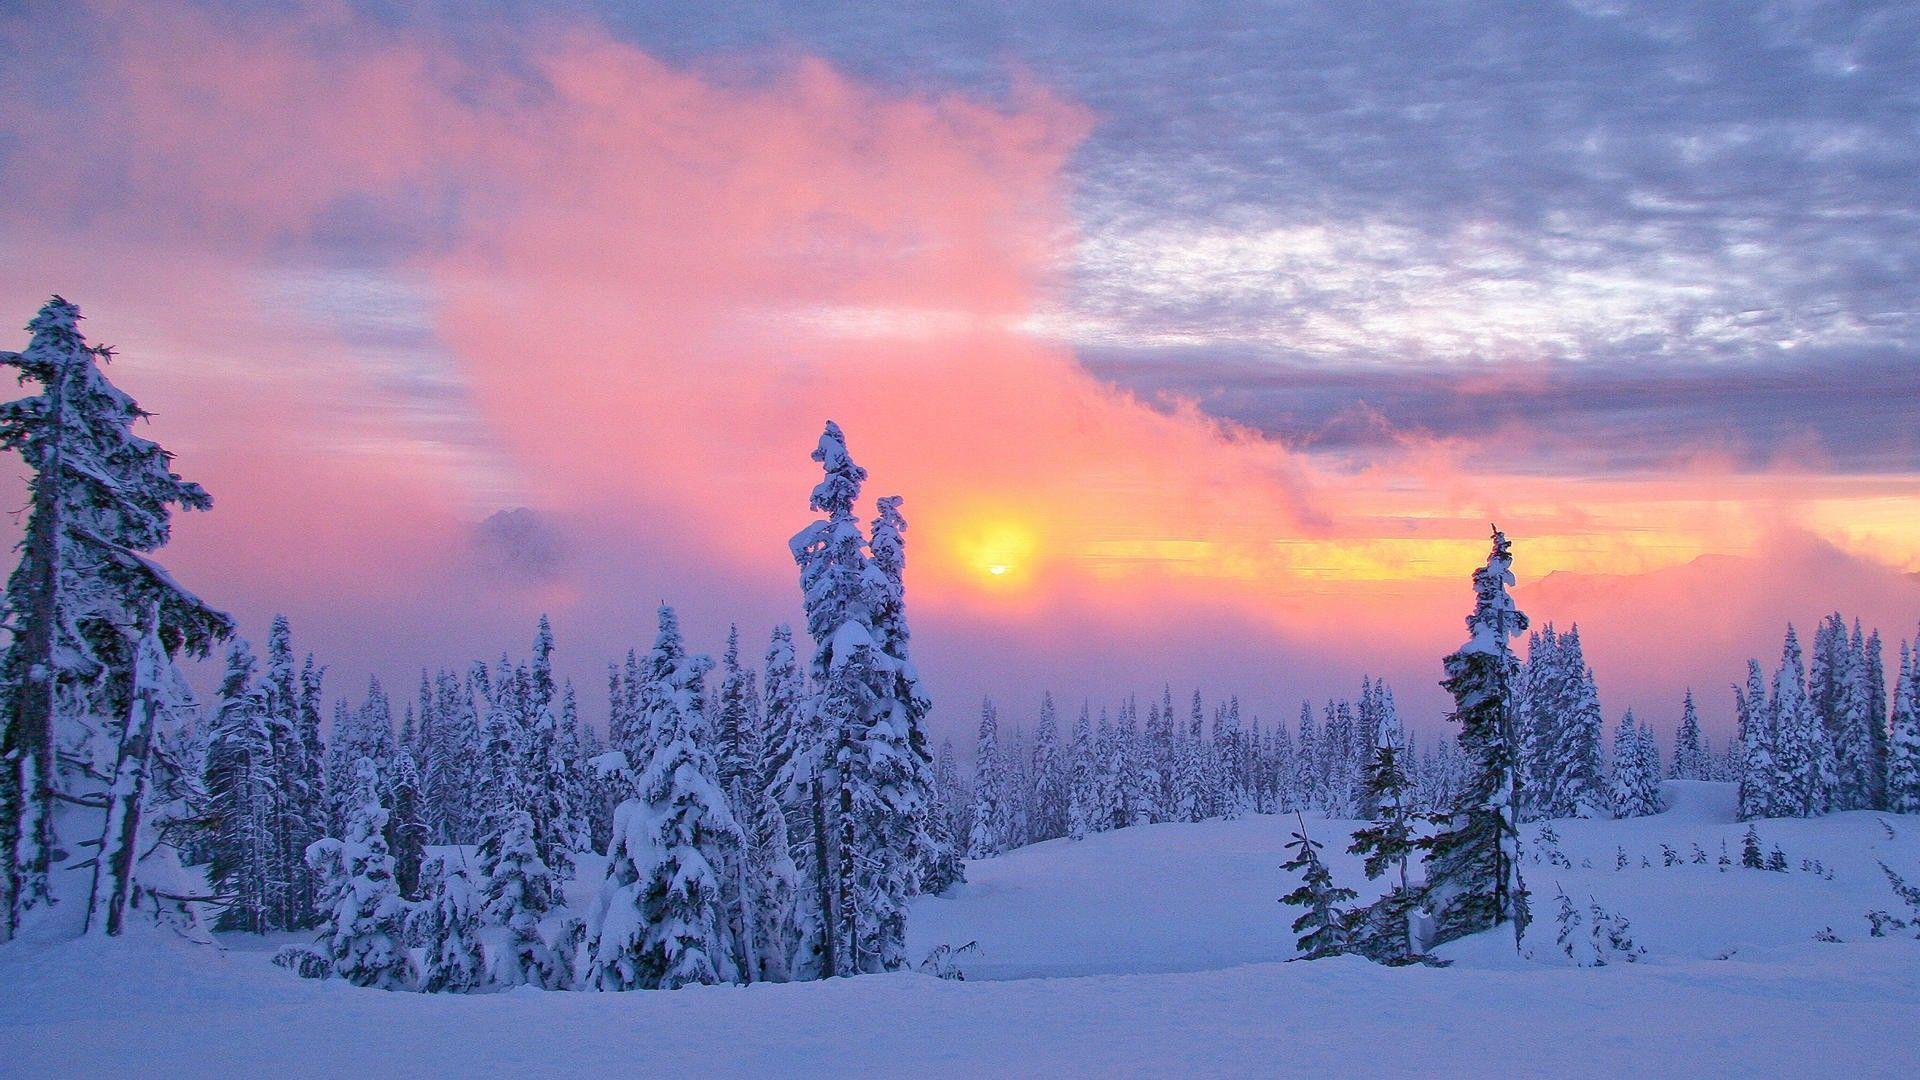 Wallpaper For > Winter Sunset Desktop Background